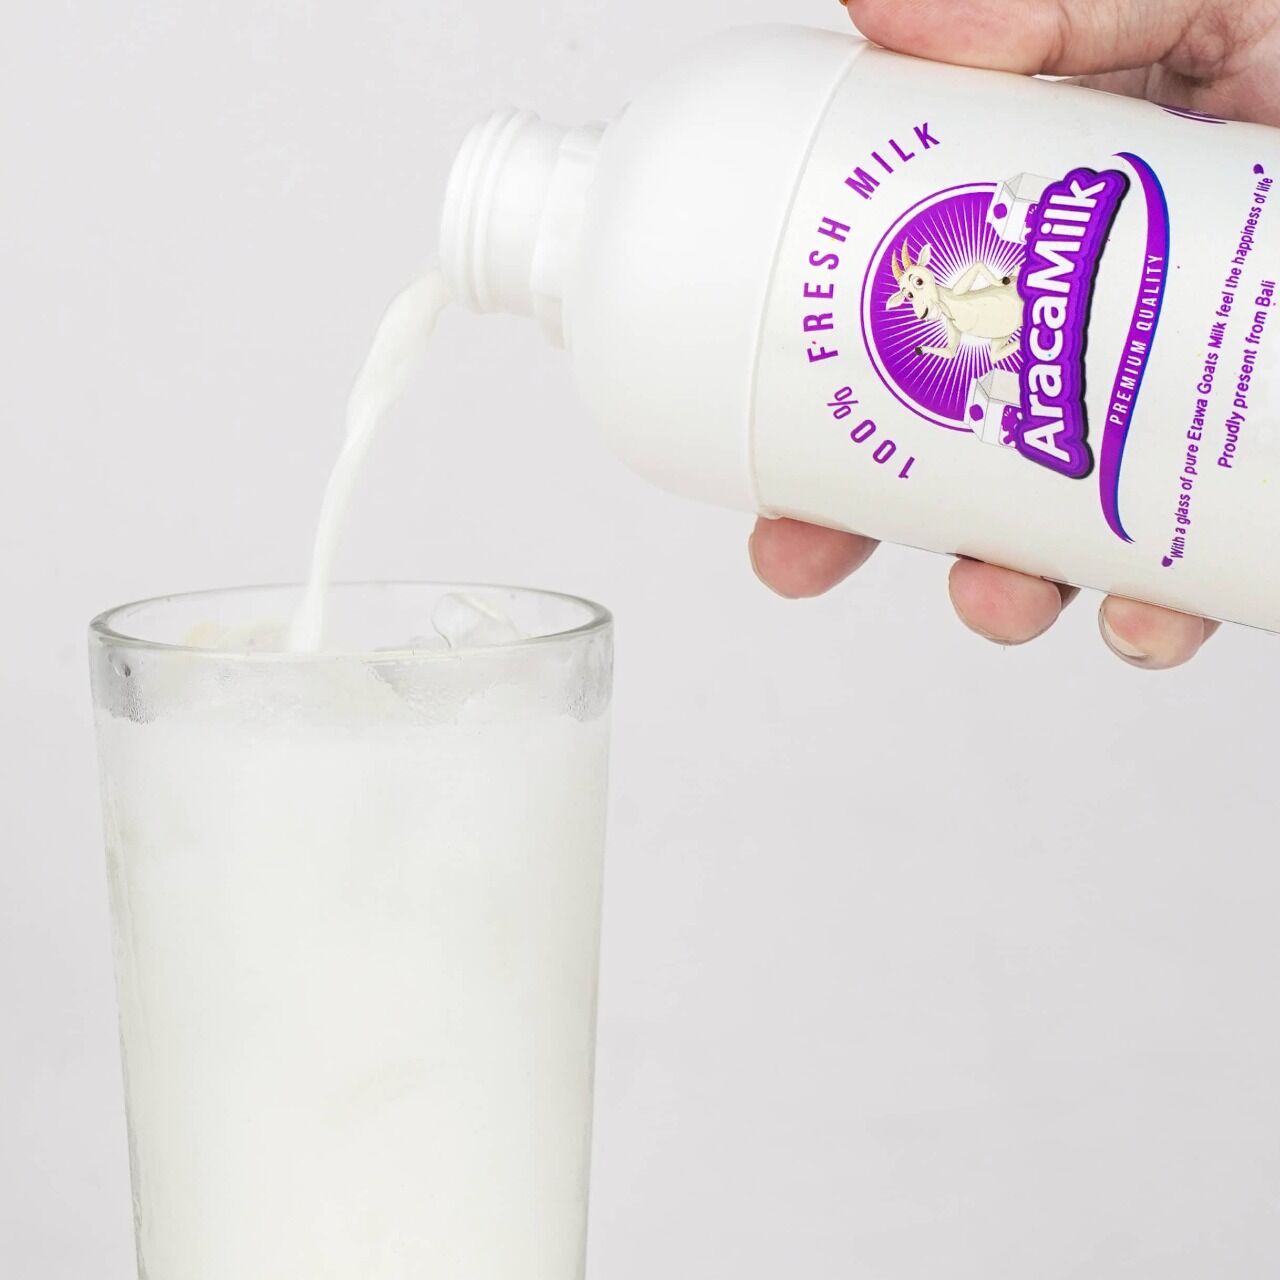 Araca Milk - Manfaat Susu Kambing Etawa Murni Terbaik